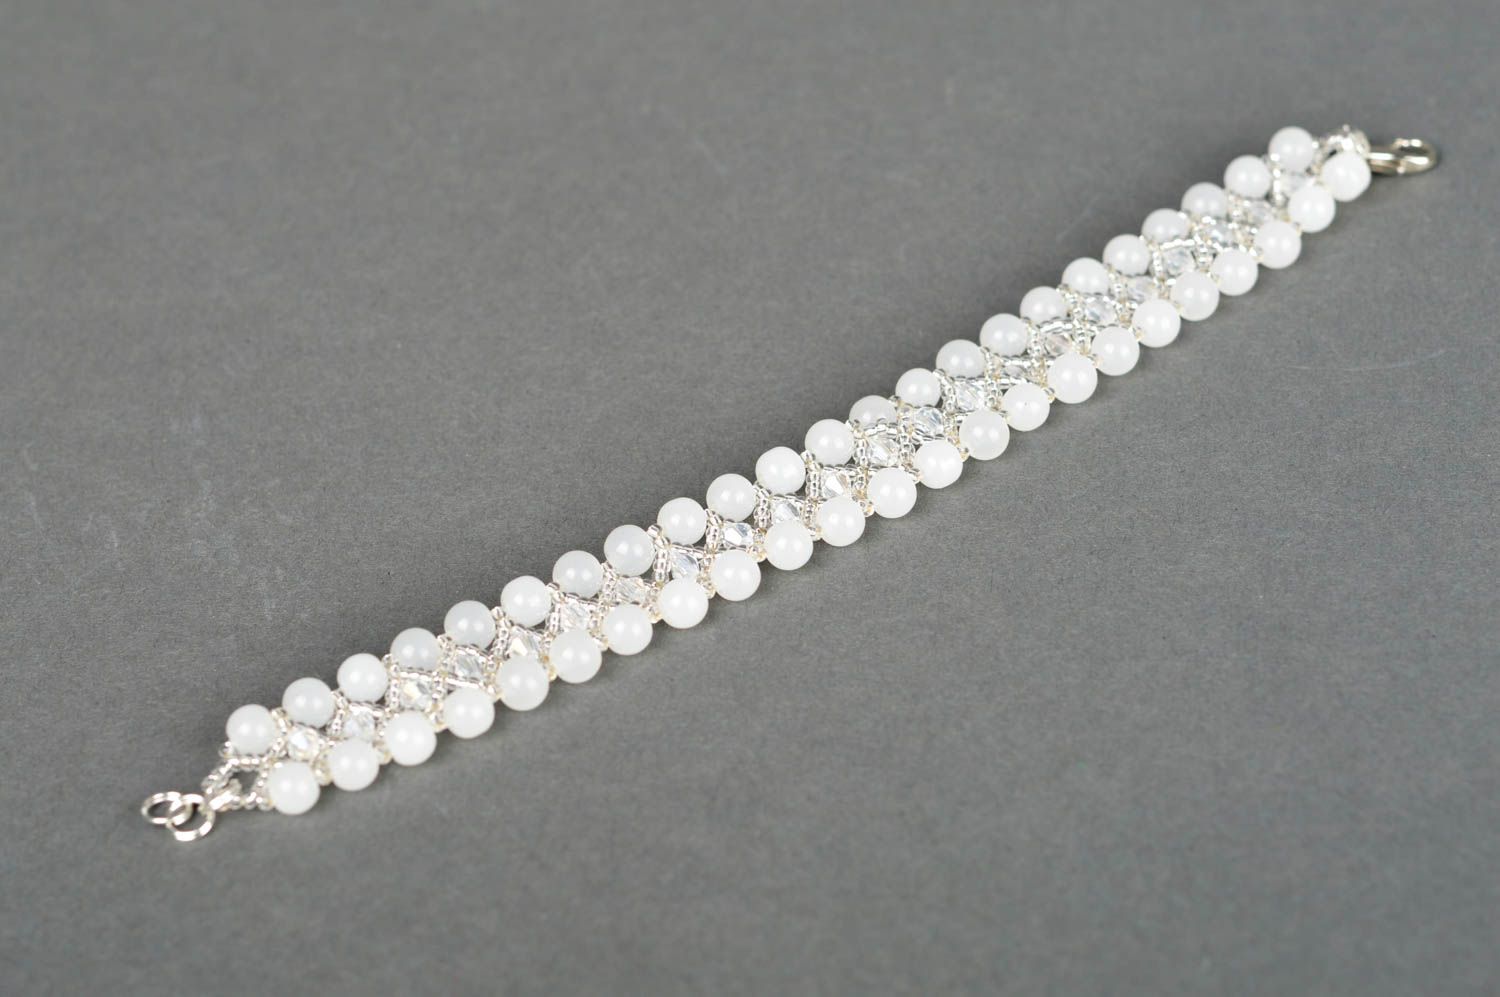 White beads two-layer elegant bracelet for teen girl photo 3